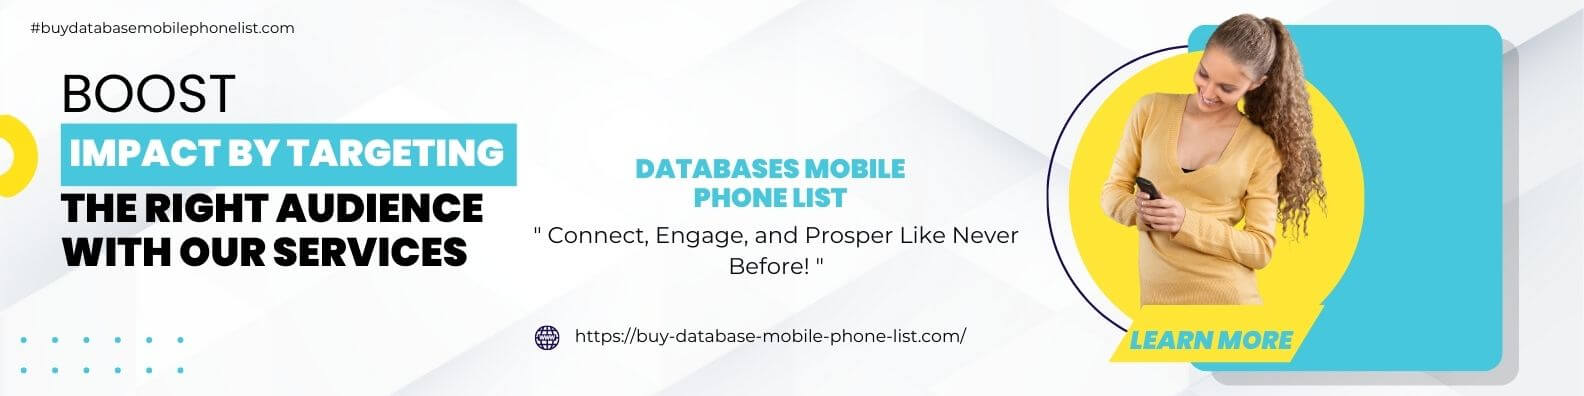 banner buy-database-mobile-phone-list.com (5) (1)